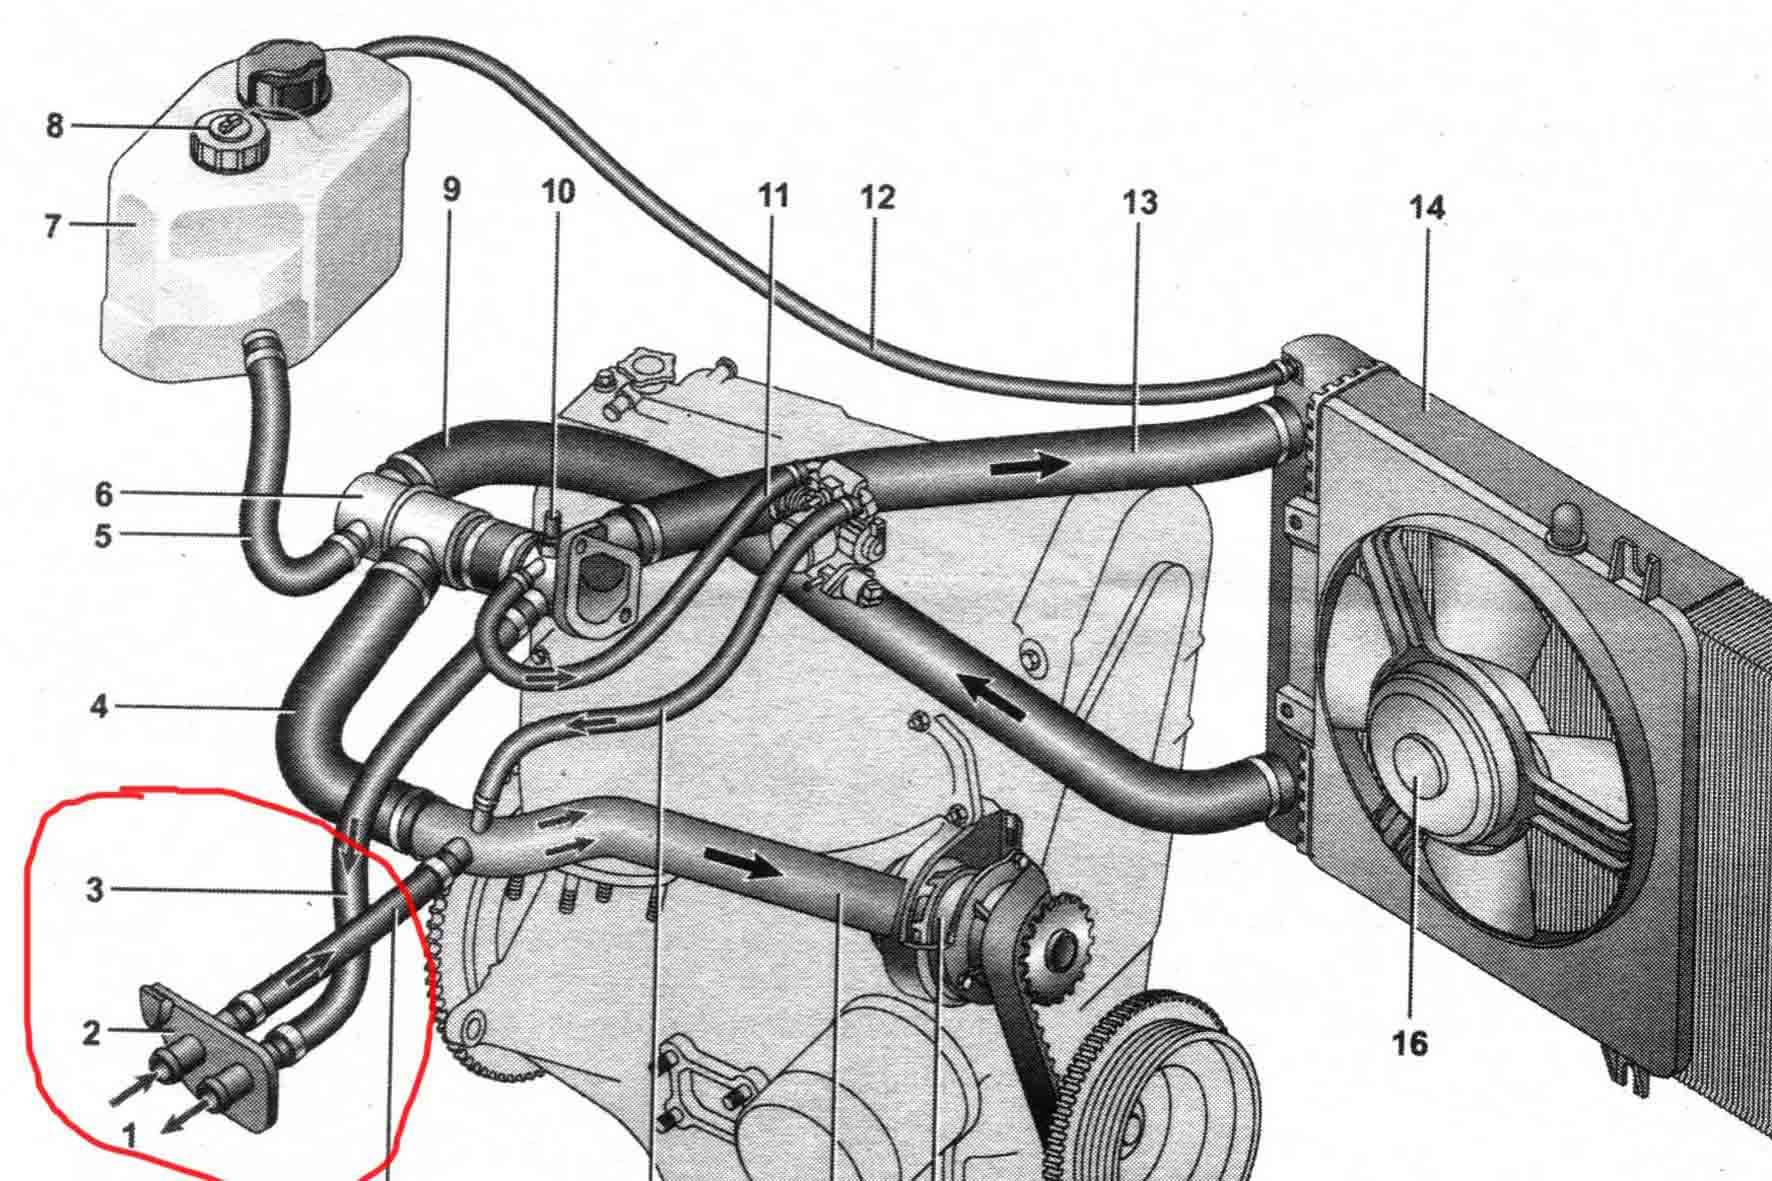 10 причин почему греется двигатель автомобиля - автомобиль для чайников